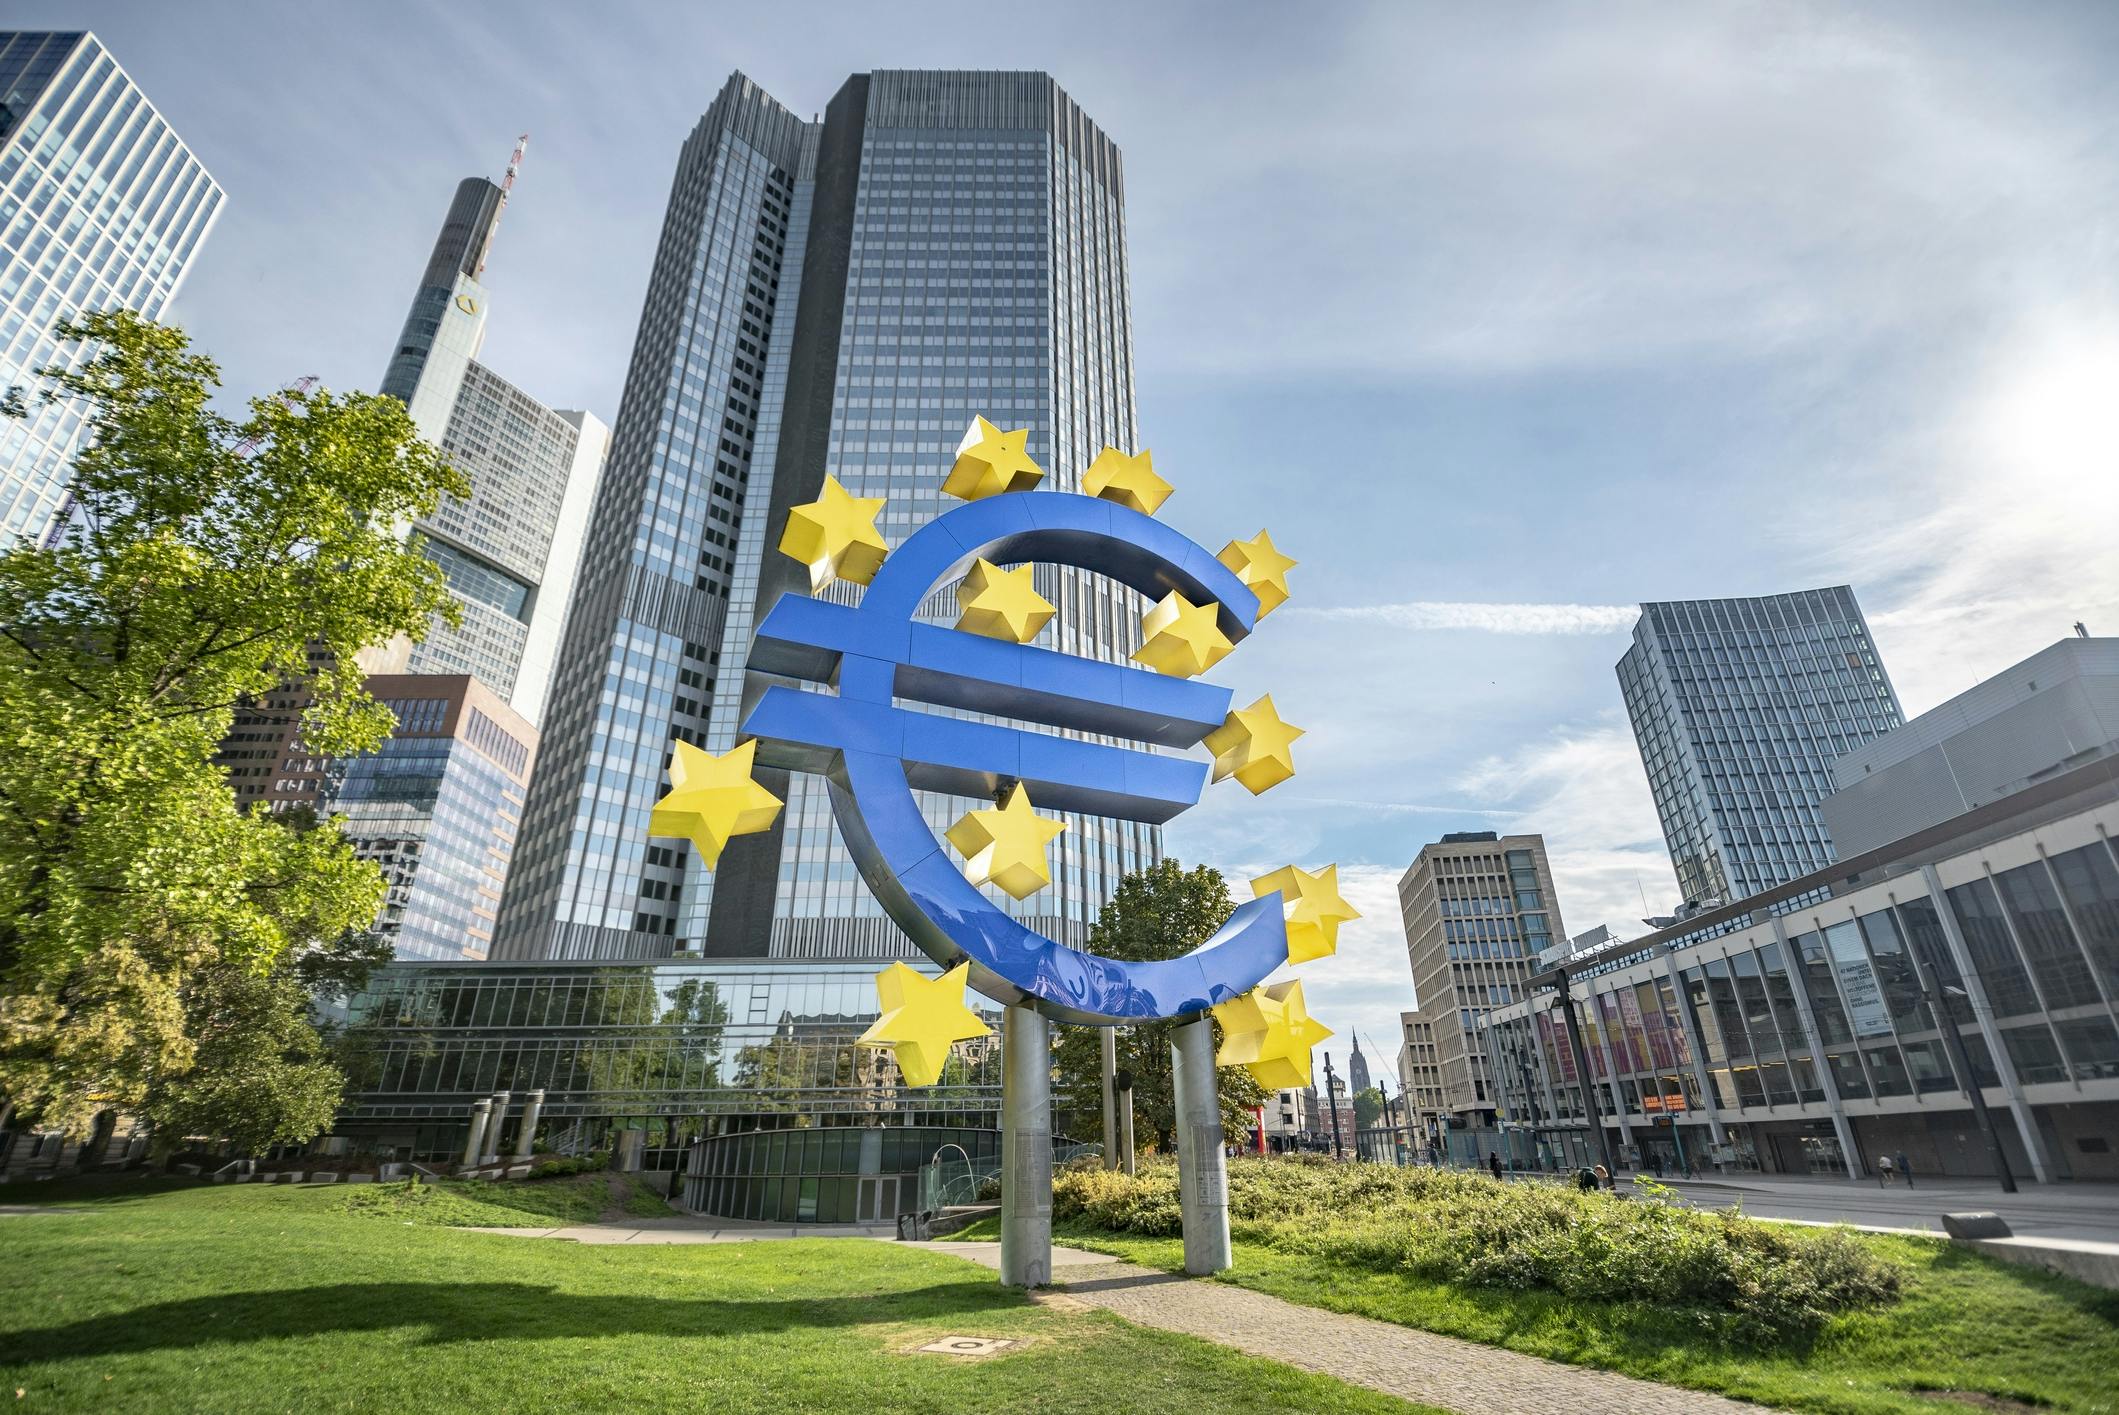 Blick auf das Gebäude der Europäischen Zentralbank mit einem großen Eurozeichen und Europasternen davor.